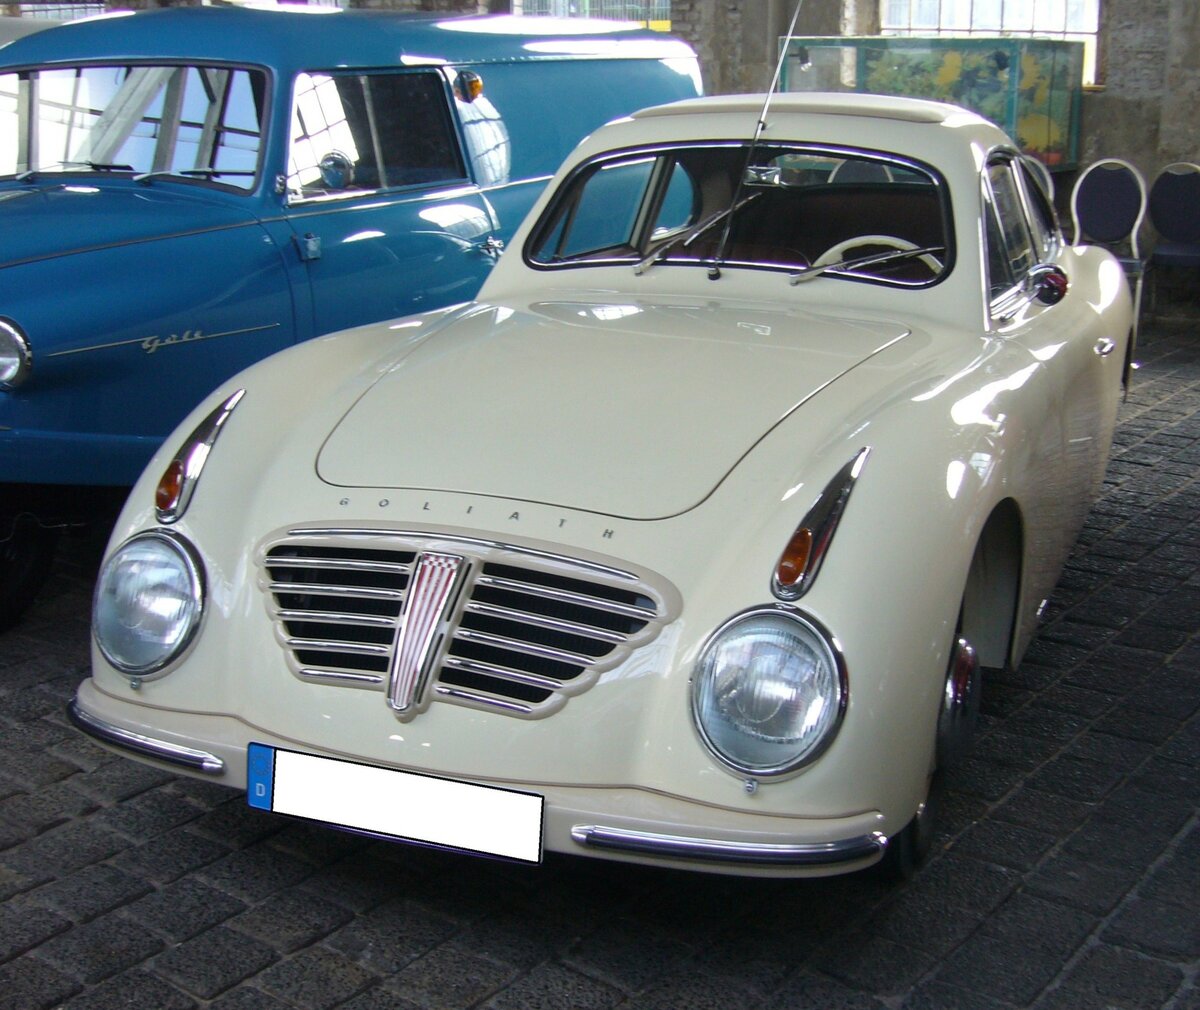 Goliath GP 700 Sport. Anfang Mai des Jahres 1951 stellten die Goliath-Werke in Bremen die Sonderkarosserie  GP 700 Sportwagen  vor. Es handelte sich hierbei um eine Aluminium-Karosserie, die auf das Chassis vom GP 700 montiert wurde. Nach dem bei der kleinen Karosseriebaufirma Rudy/Delmenhorst zwei Exemplare hergestellt wurden, verlagerte Goliath die Produktion zum Karosseriewerk Rometsch/Berlin. Dieses formschöne Coupé hatte einen hohen Kaufpreis, da es in Handarbeit gefertigt wurde. Nur 27 Fahrzeuge wurden zu einem Preis von DM 9.700,00 verkauft. Heute sind noch drei Fahrzeuge bekannt. Unter der Haube verrichtet ein Zweizylinderreihenzweitaktmotor mit einem Hubraum von 688 cm³ seinen Dienst. Er leistet 36 PS anstatt der 24 PS im  normalen  GP 700. 50. Jahrestreffen der Borgward I.G. e.V. an der  Alten Dreherei  in Mülheim an der Ruhr.